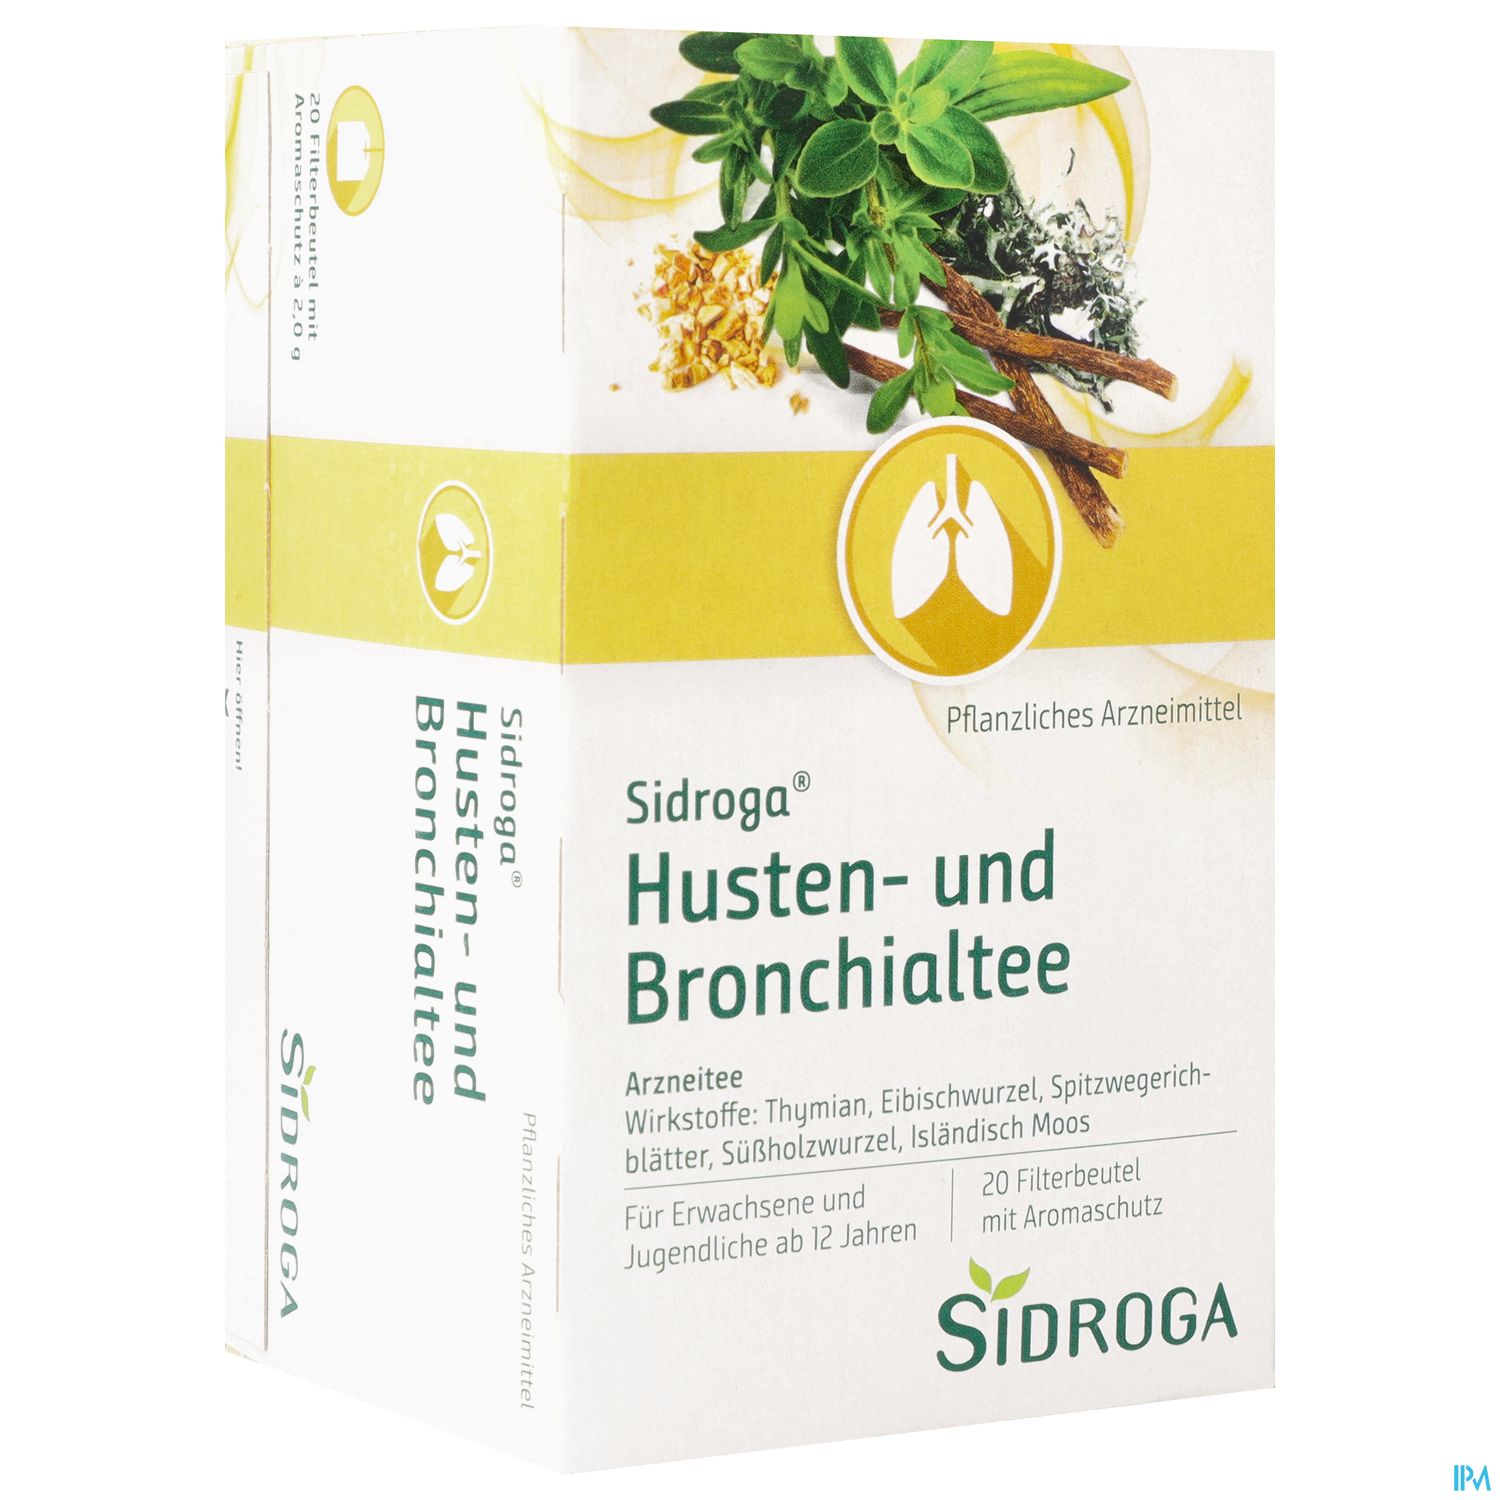 Sidroga Husten- und Bronchialtee